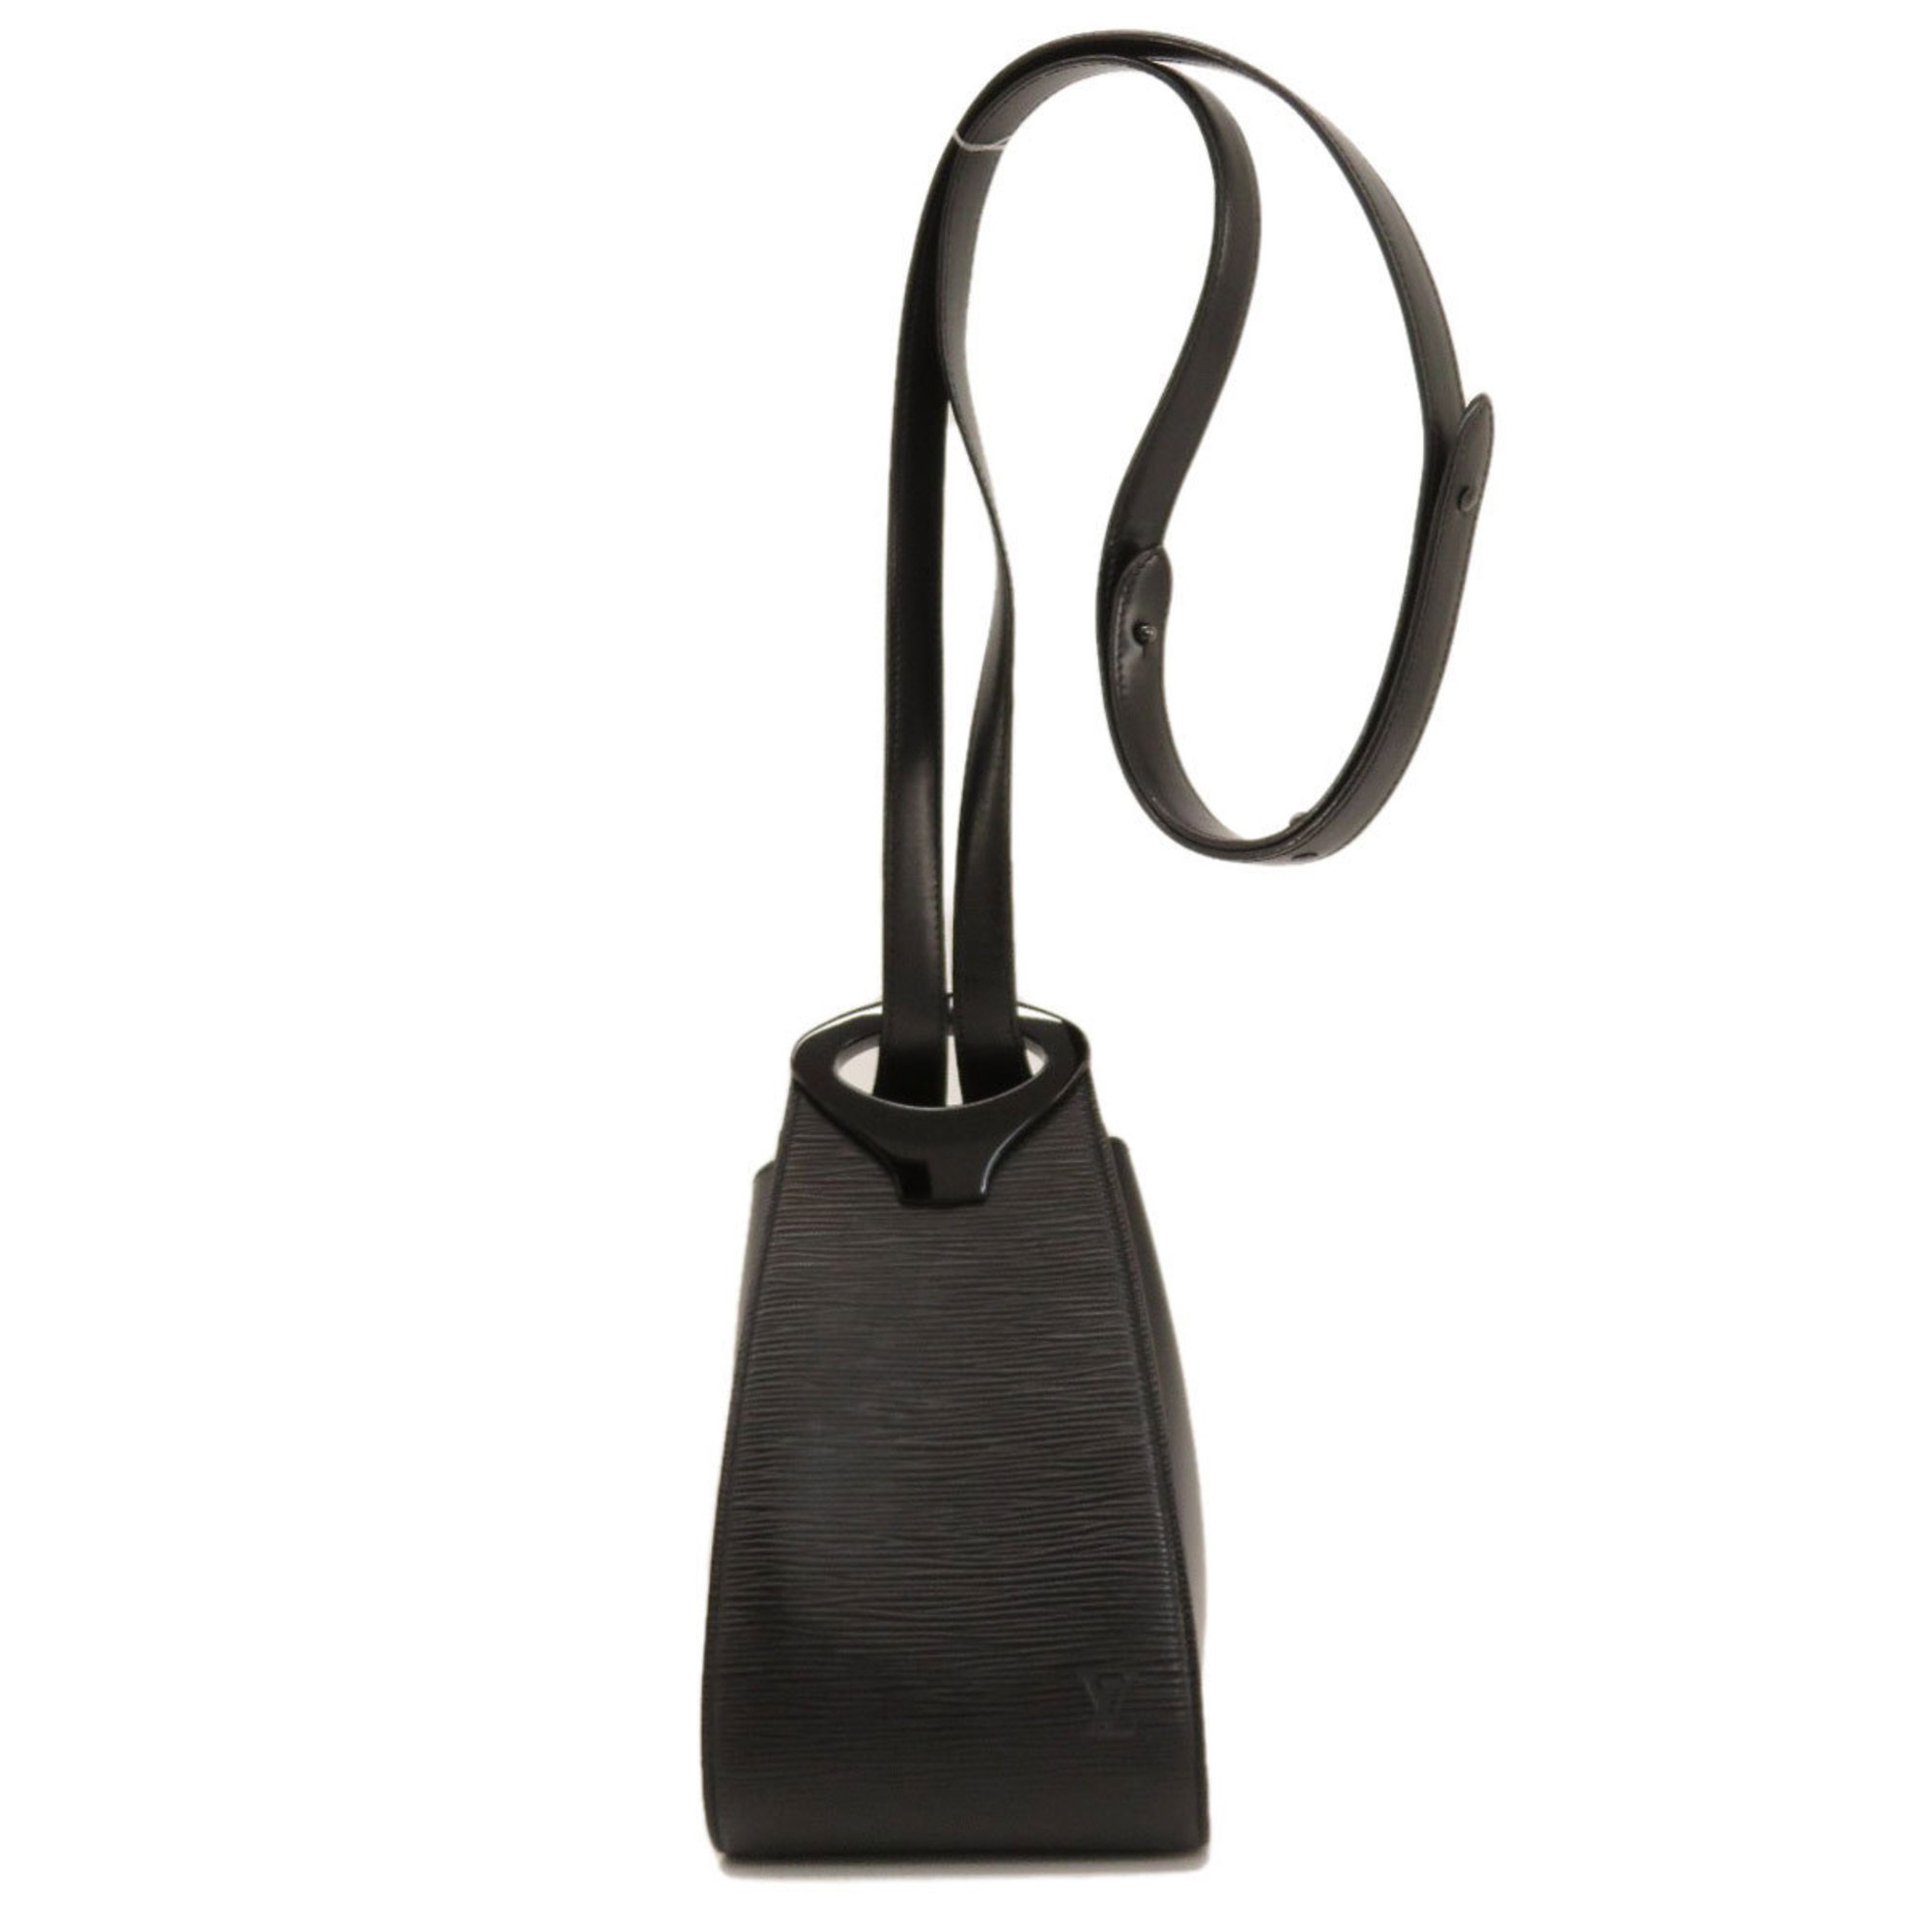 Louis Vuitton M52392 Huy Shoulder Bag Epi Leather Women's LOUIS VUITTON